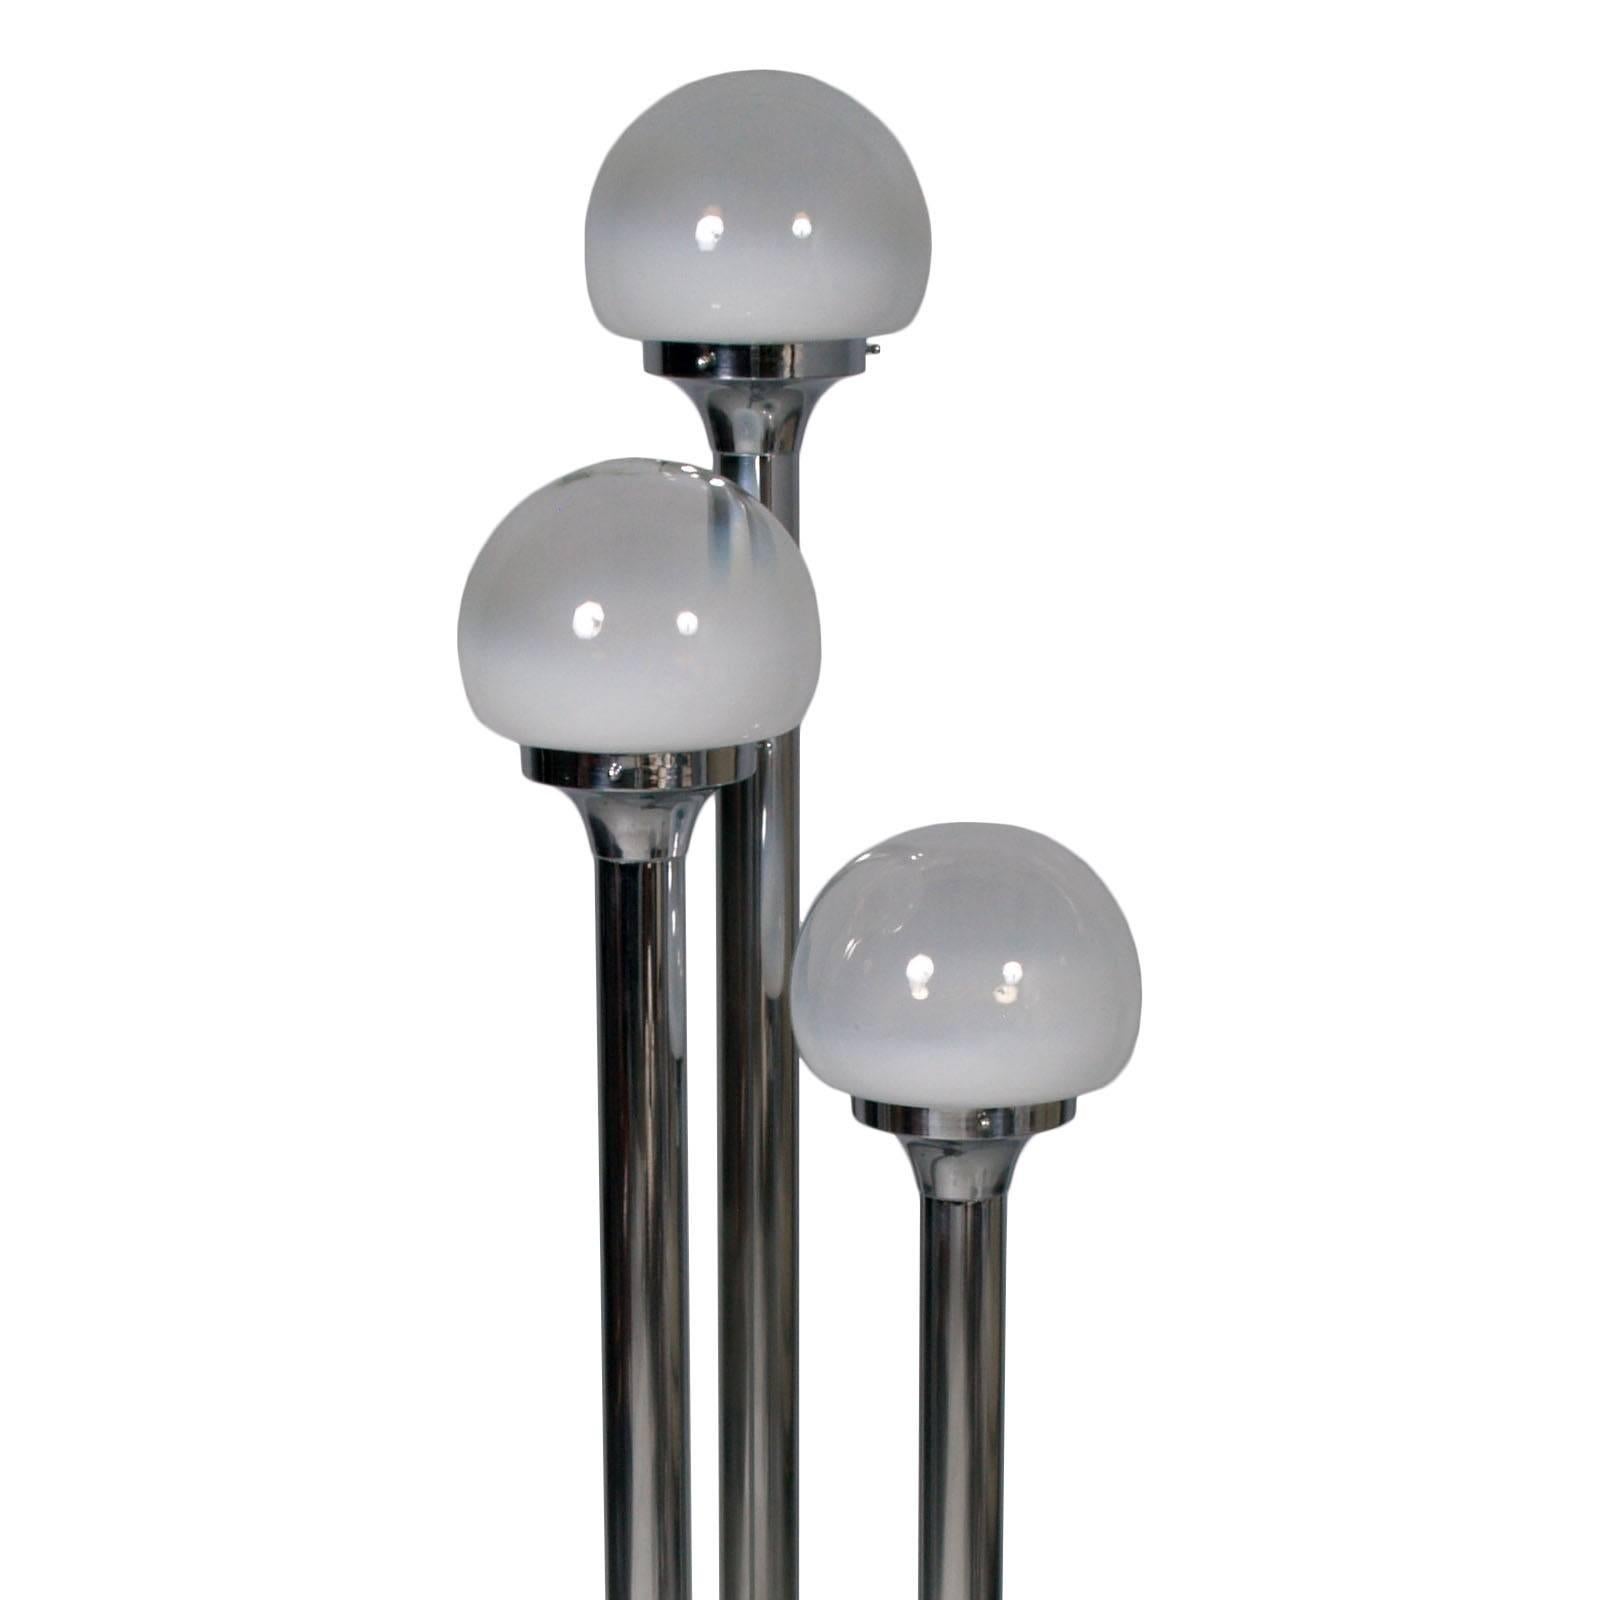 1960s Italie lampadaire à trois lumières en acier chromé, bol par Steele lattimo Murano-verre, graduellement transparent au sommet.
Système électrique renouvelé prêt à l'emploi

Dimensions en cm : D base 30 x D max 40. H145.